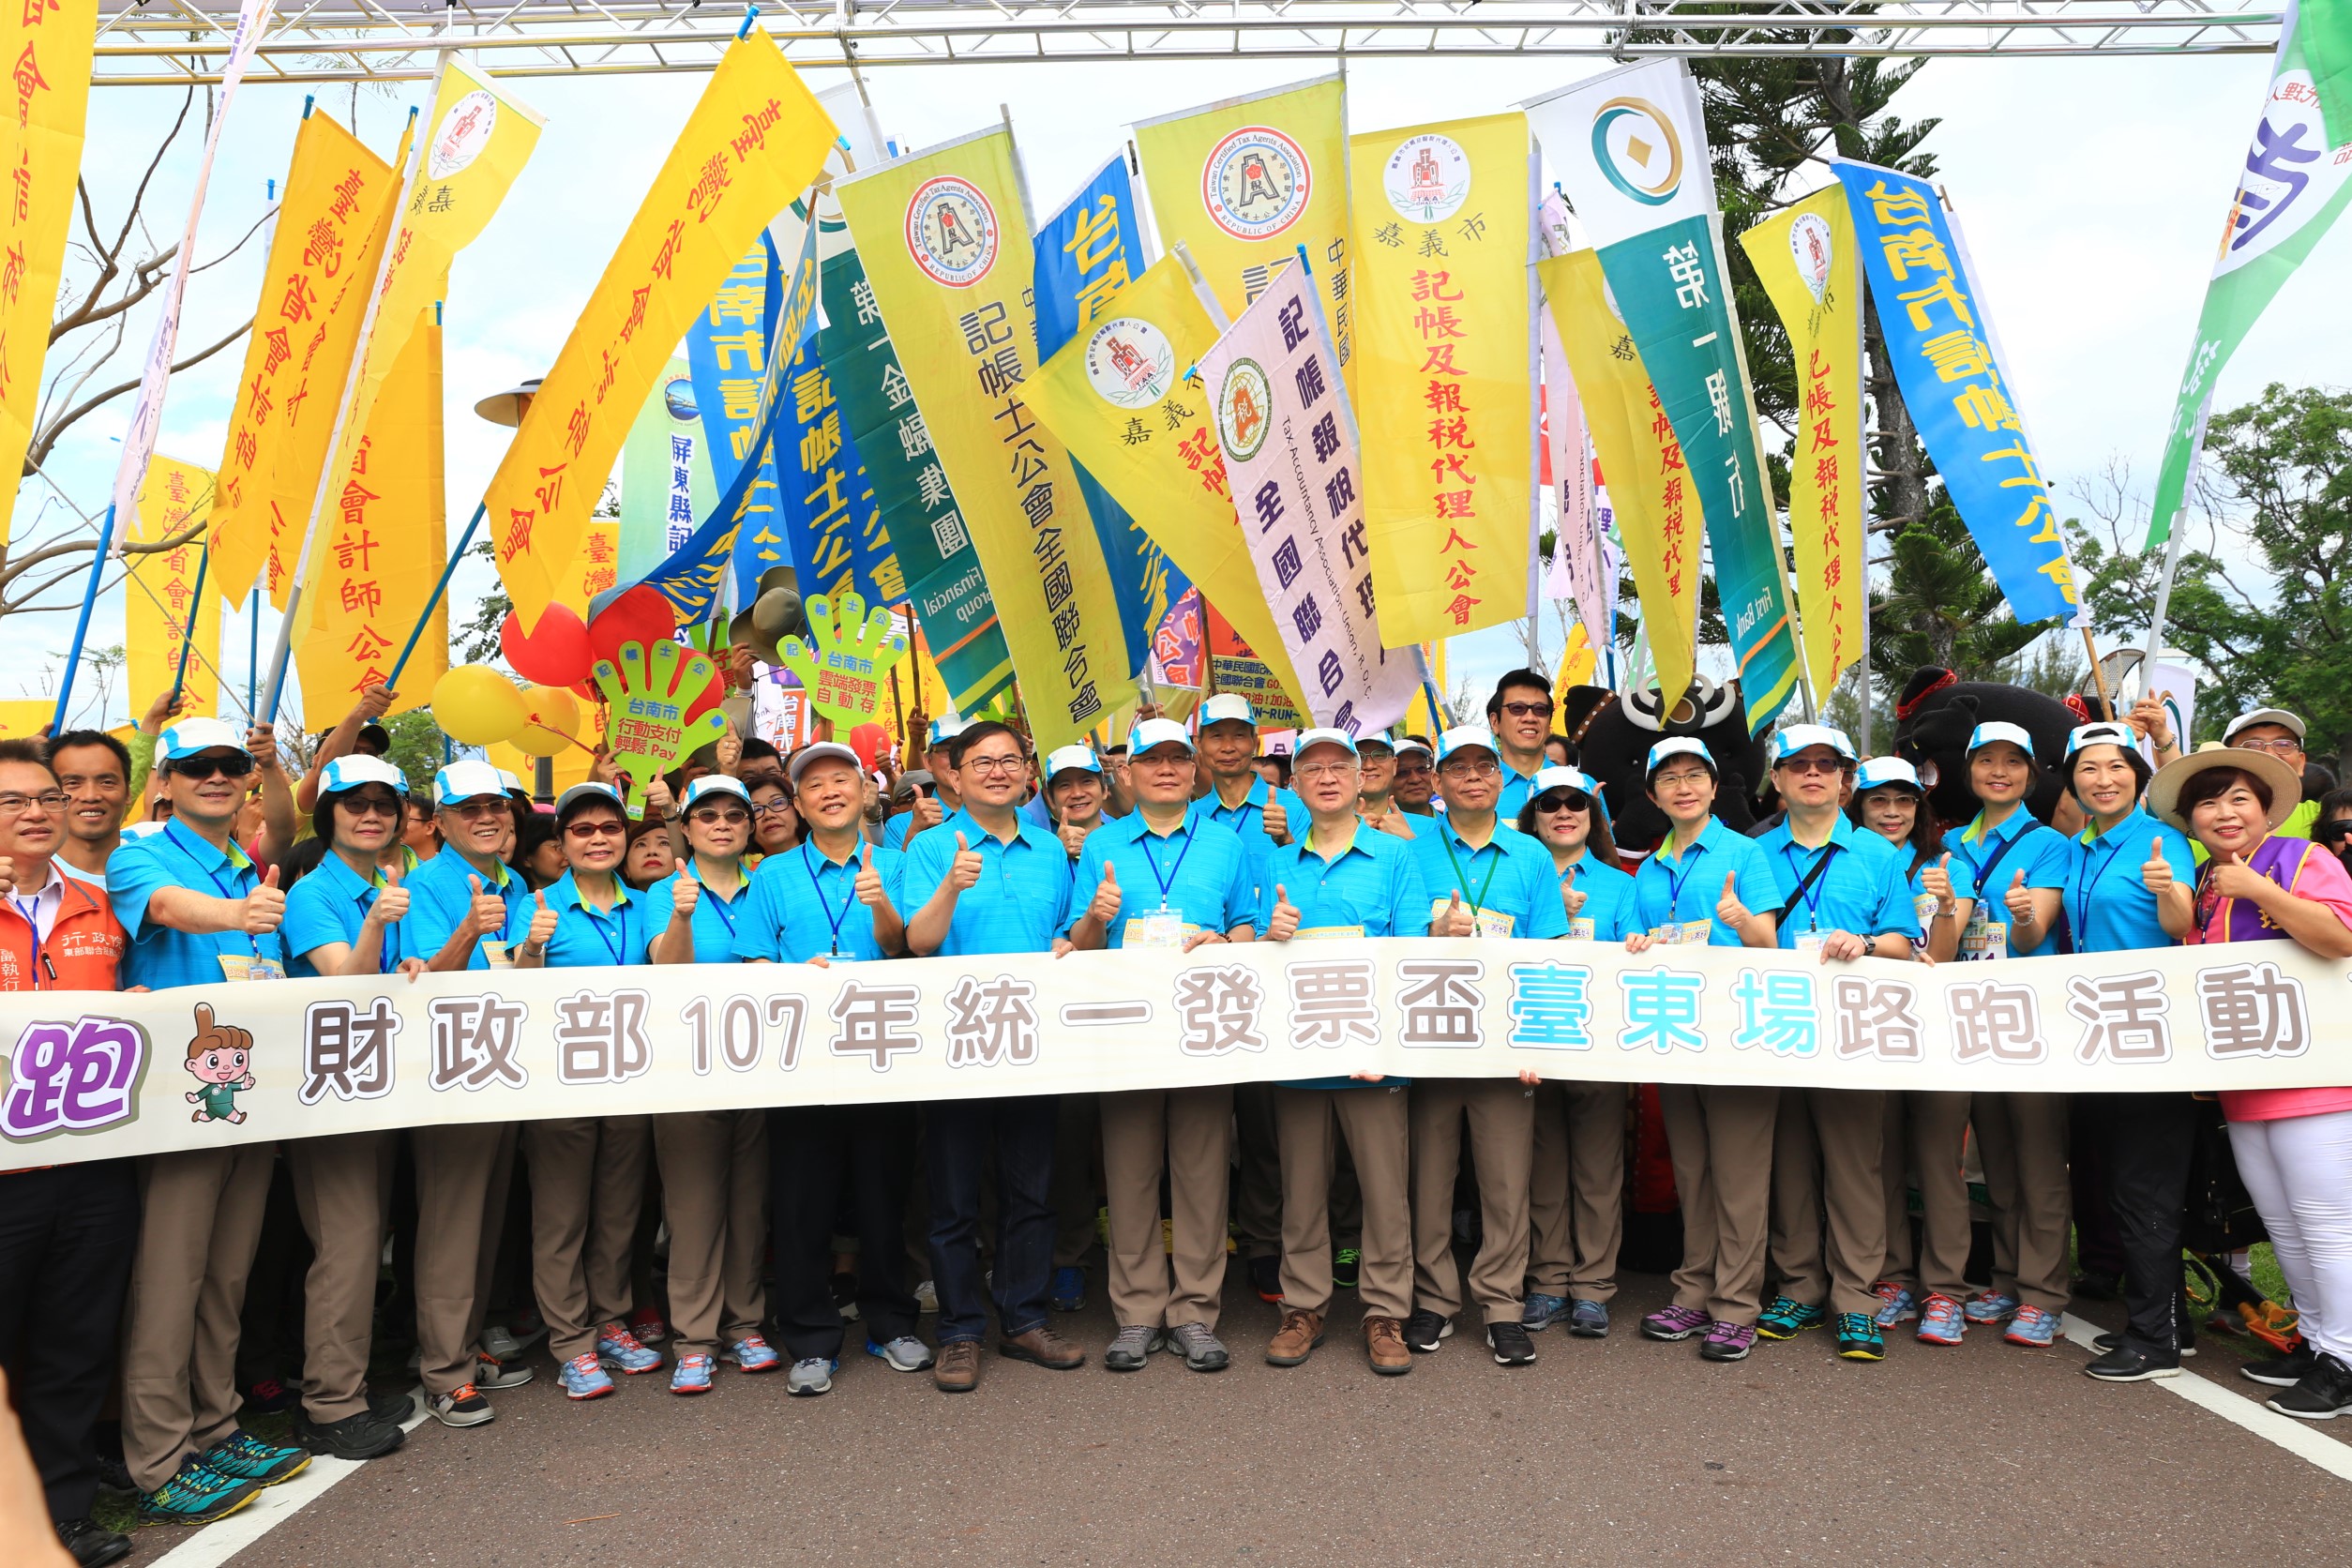 「財政部107年統一發票盃首場路跑活動-臺東森林公園」圓滿完成。